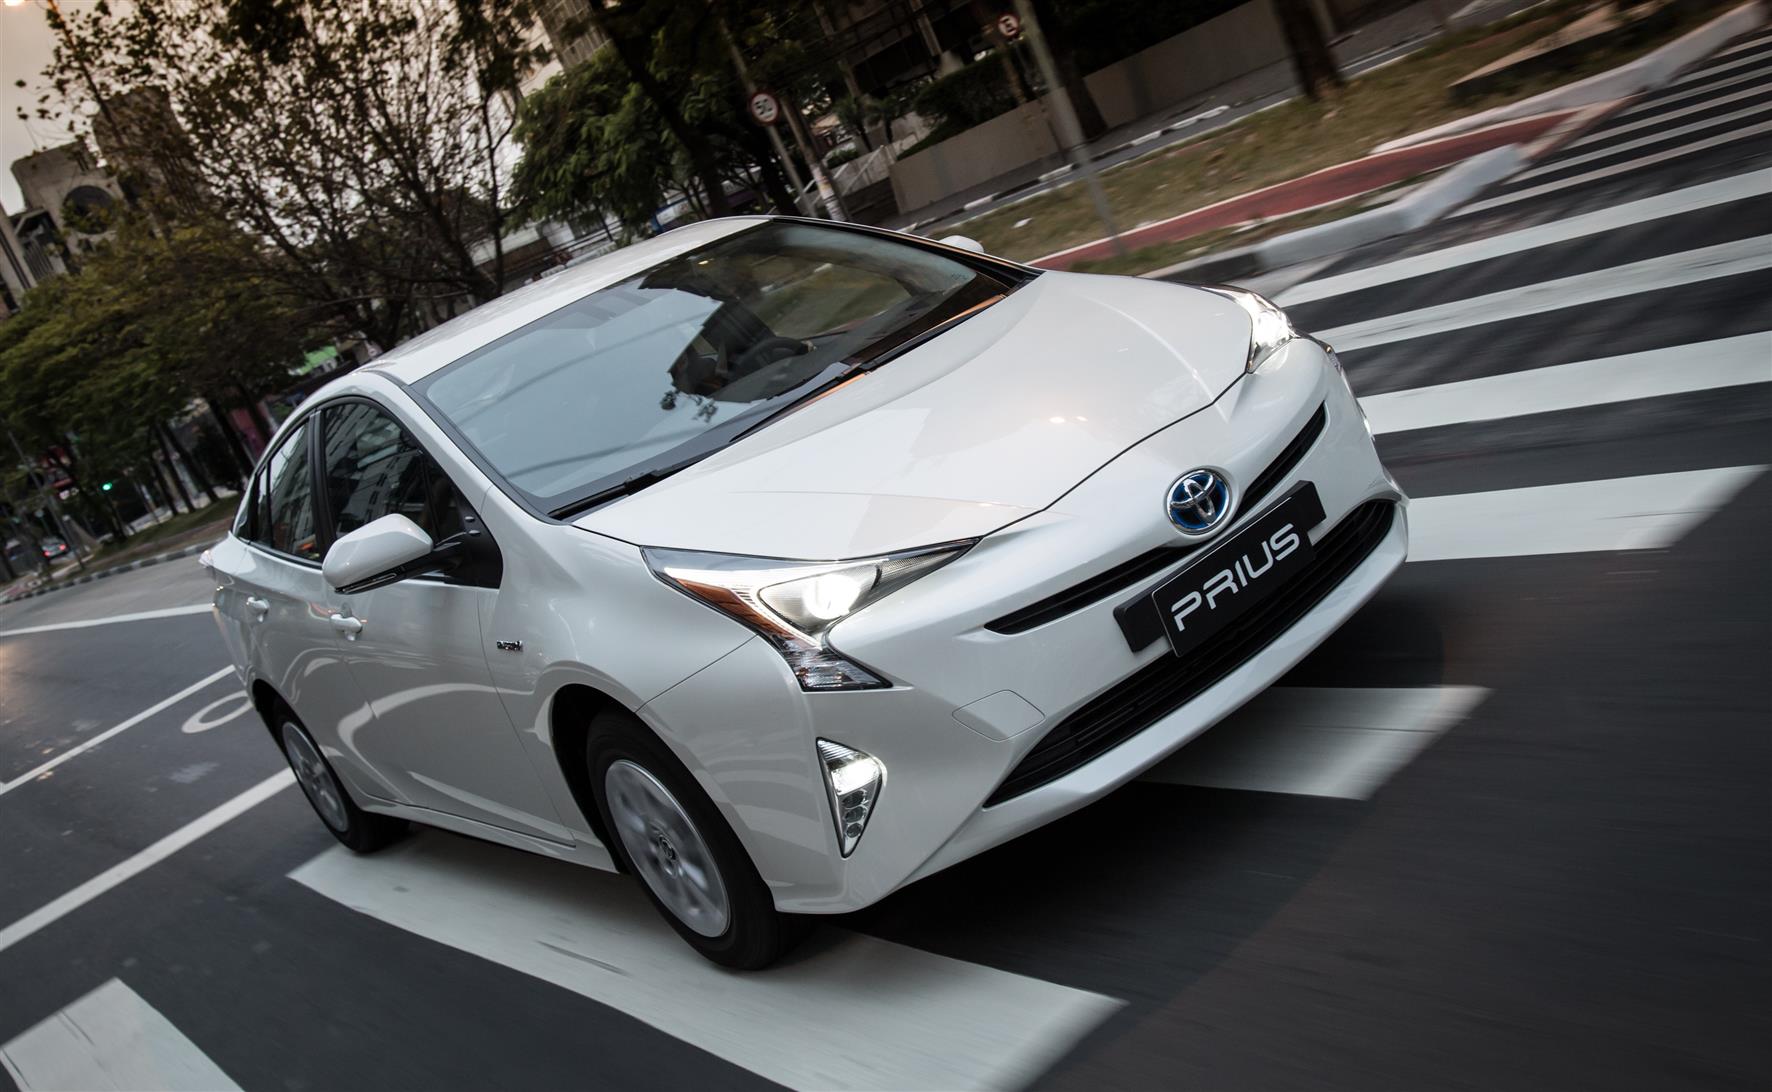 Toyota Prius vende 75% a mais